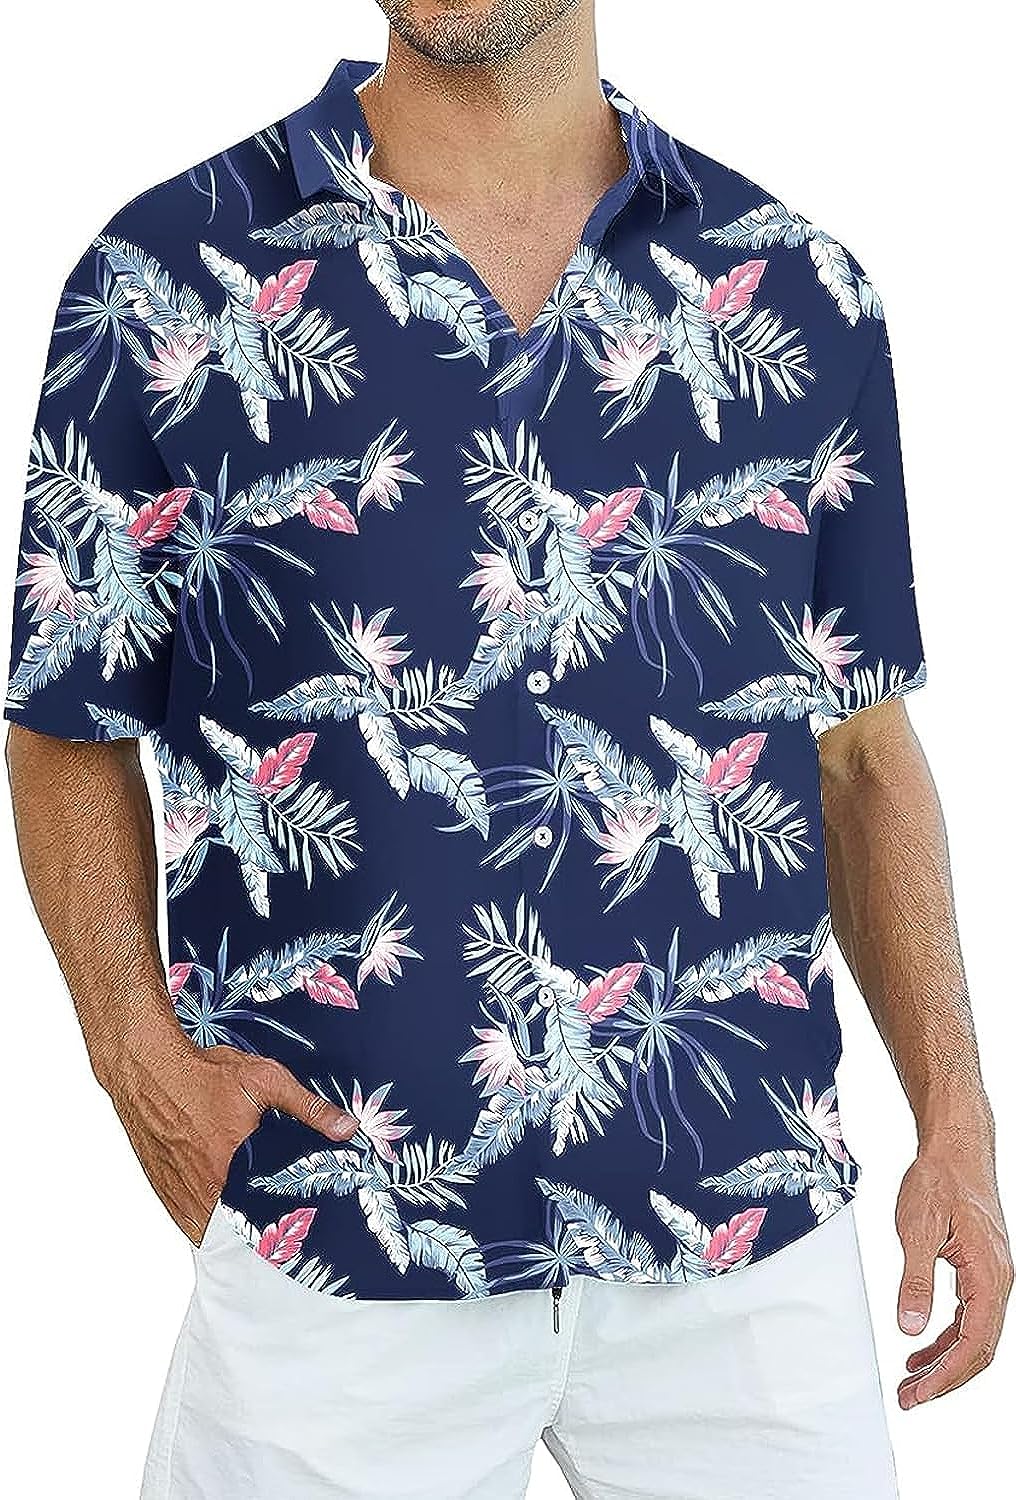 Mens Hawaiian Shirts Short Sleeve Casual Tropical Button Down Shirts Summer Beach